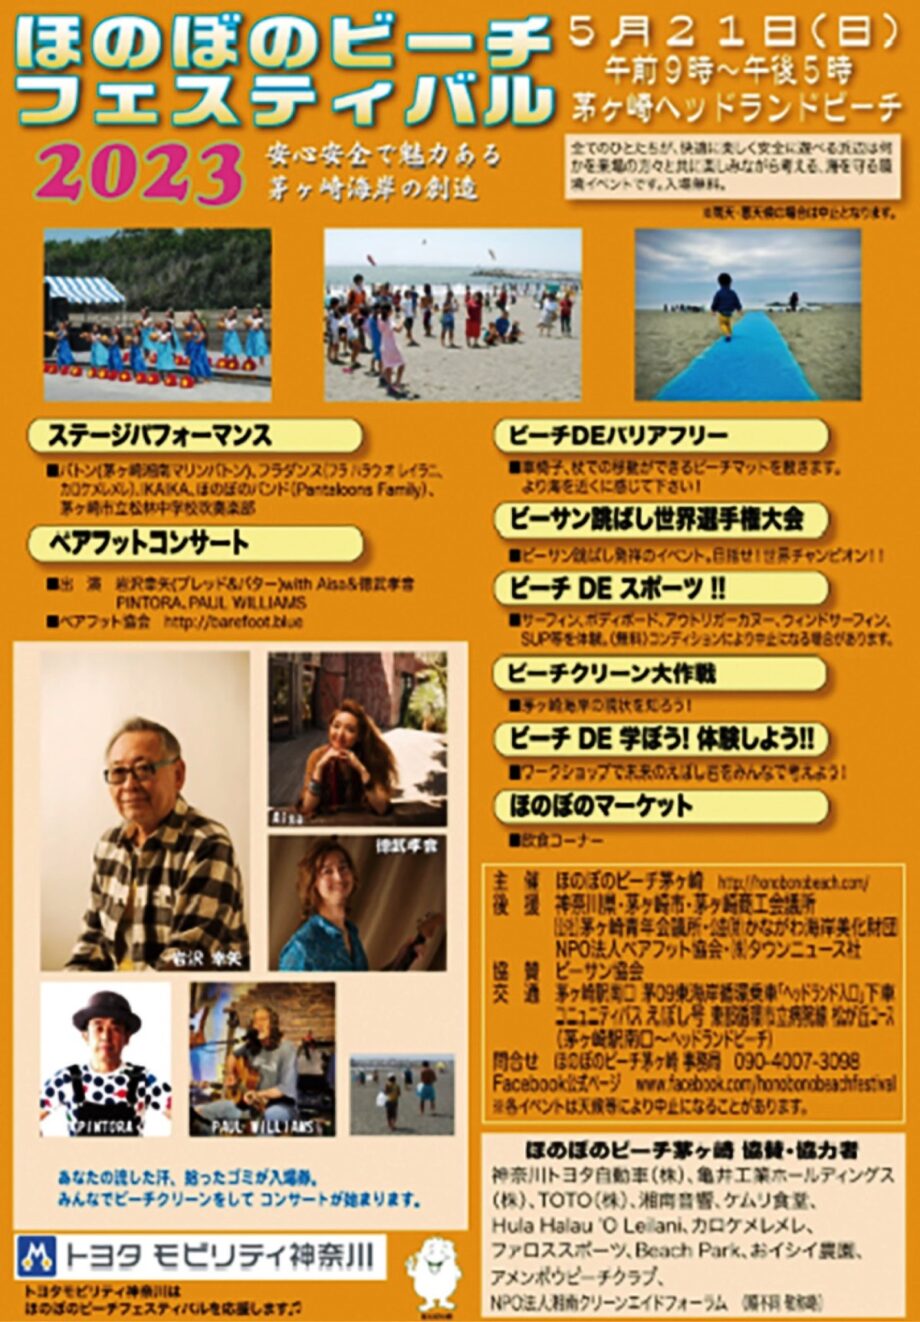 【５月２１日(日)】茅ヶ崎ヘッドランドビーチで「ほのぼのビーチフェスティバル２０２３」開催